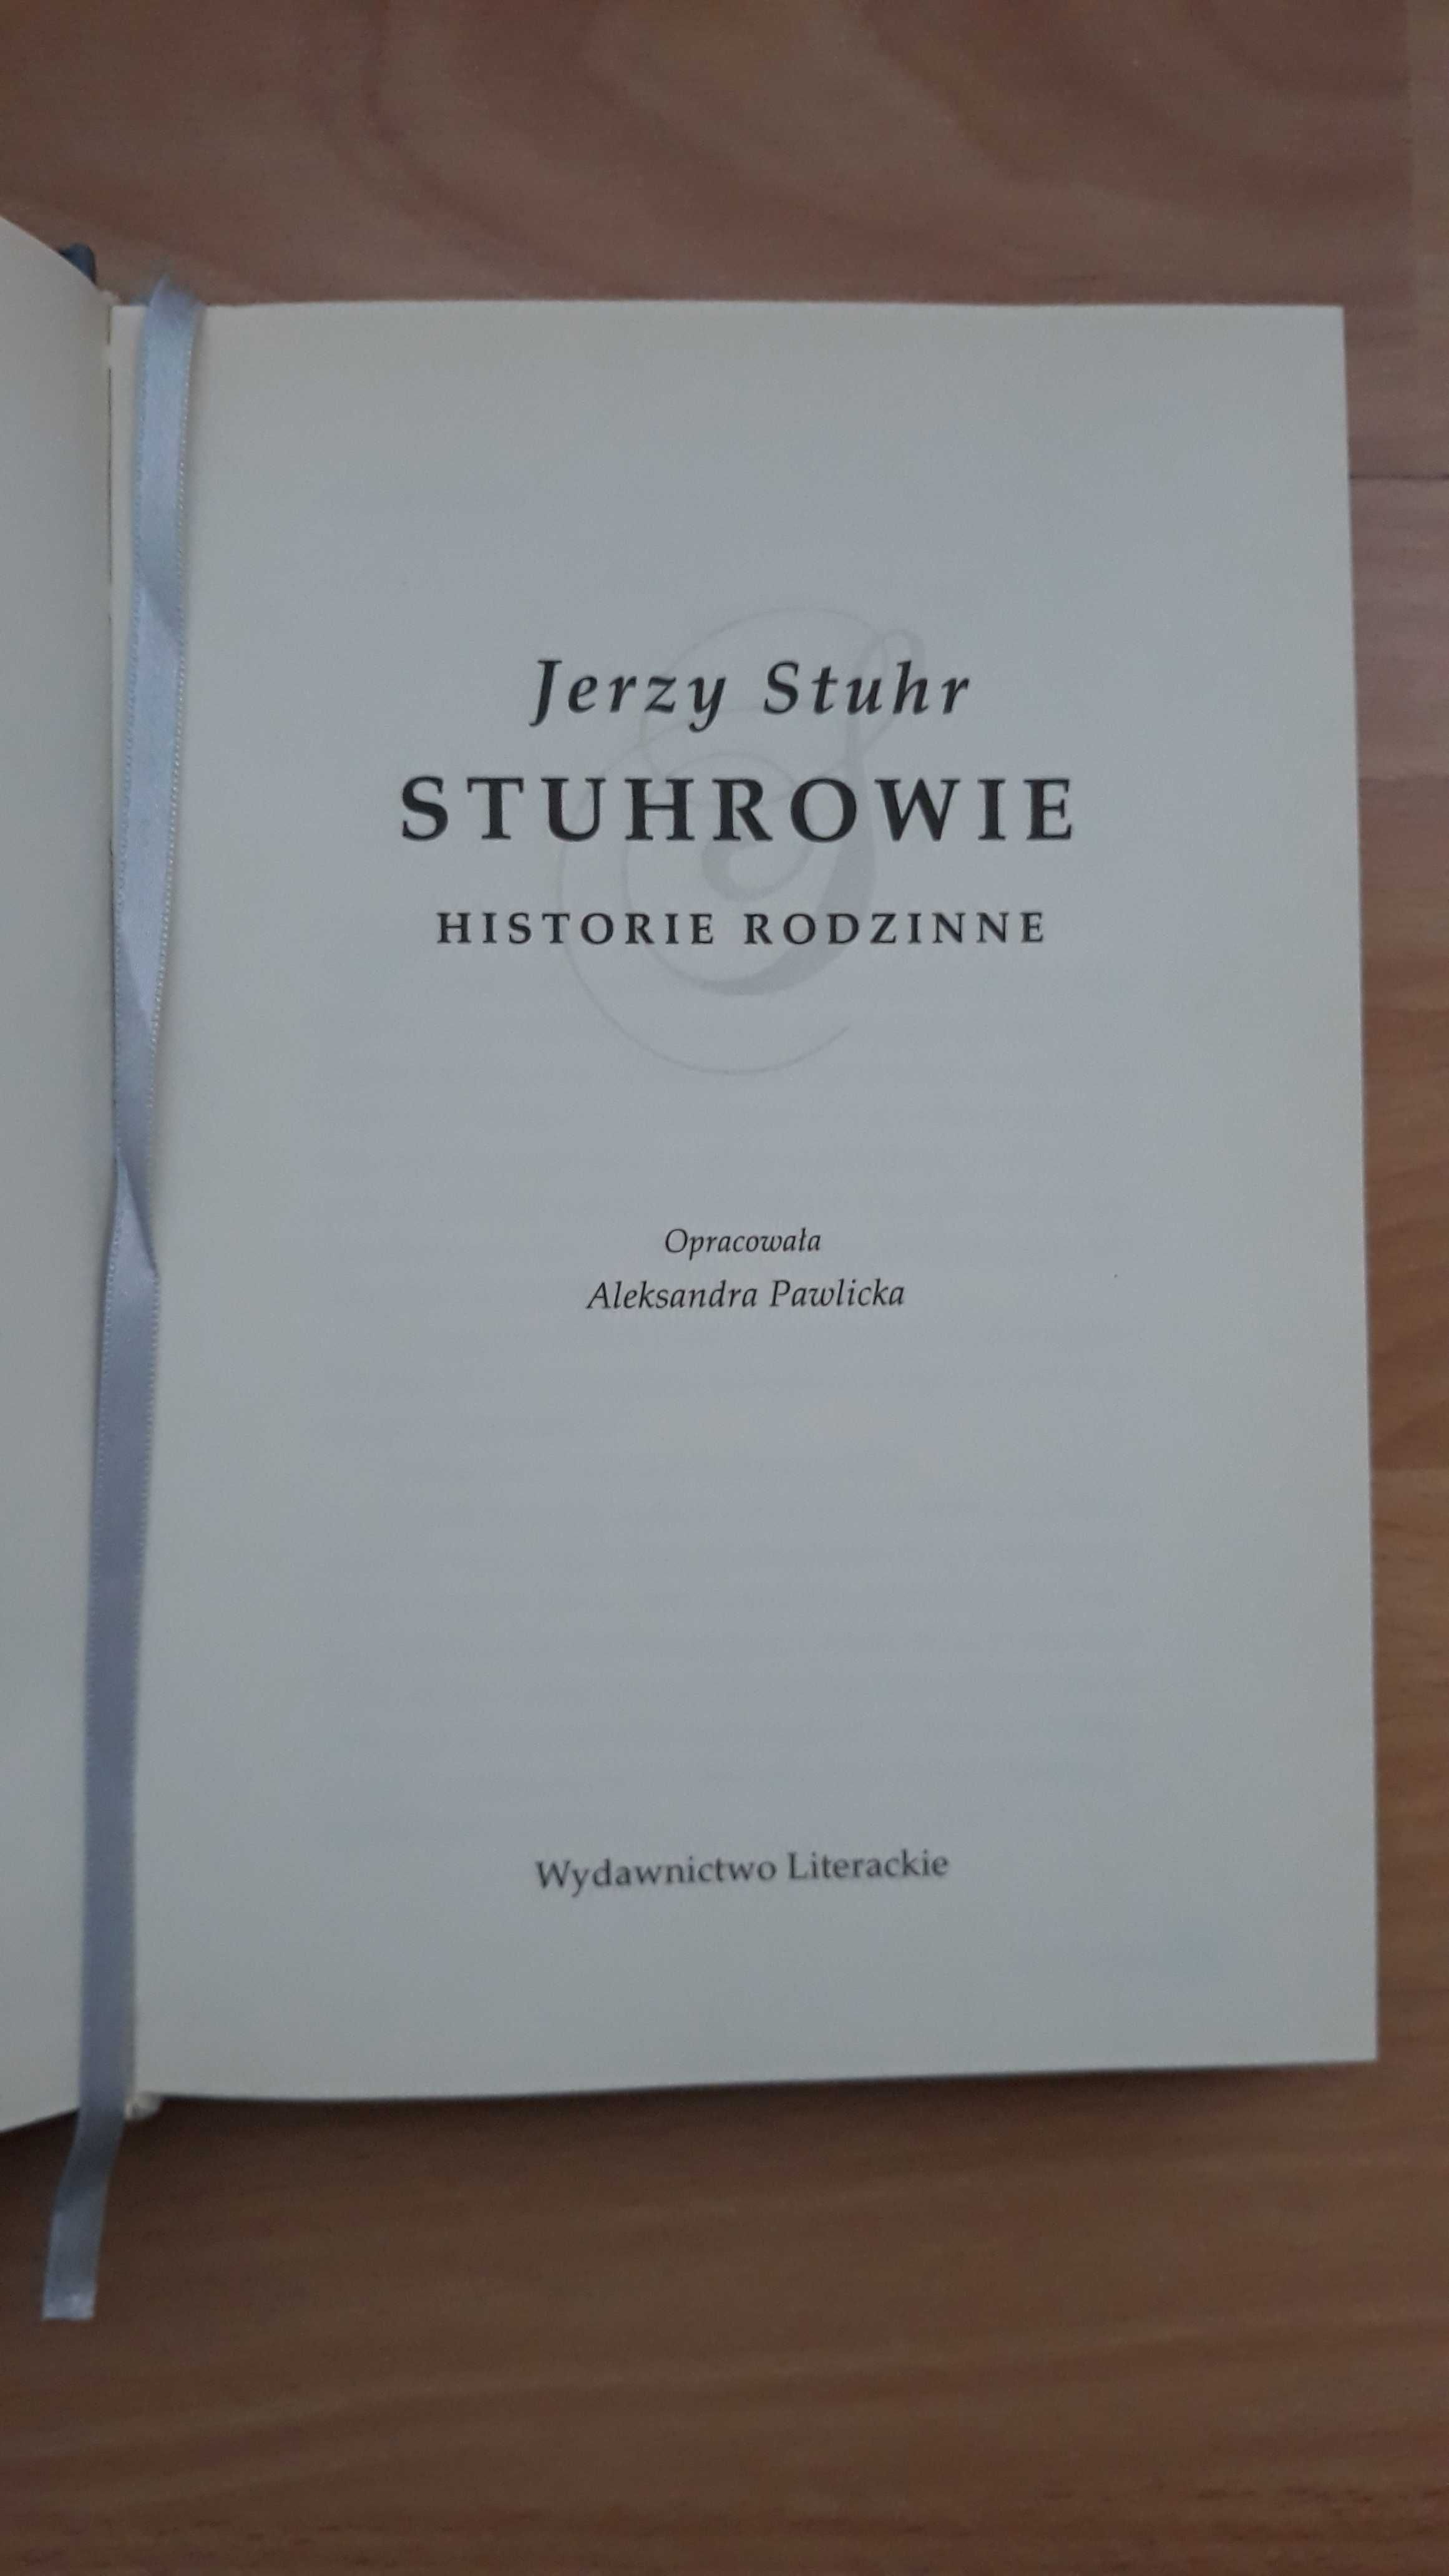 Sthurowie. Historie rodzinne - Jerzy Sthur